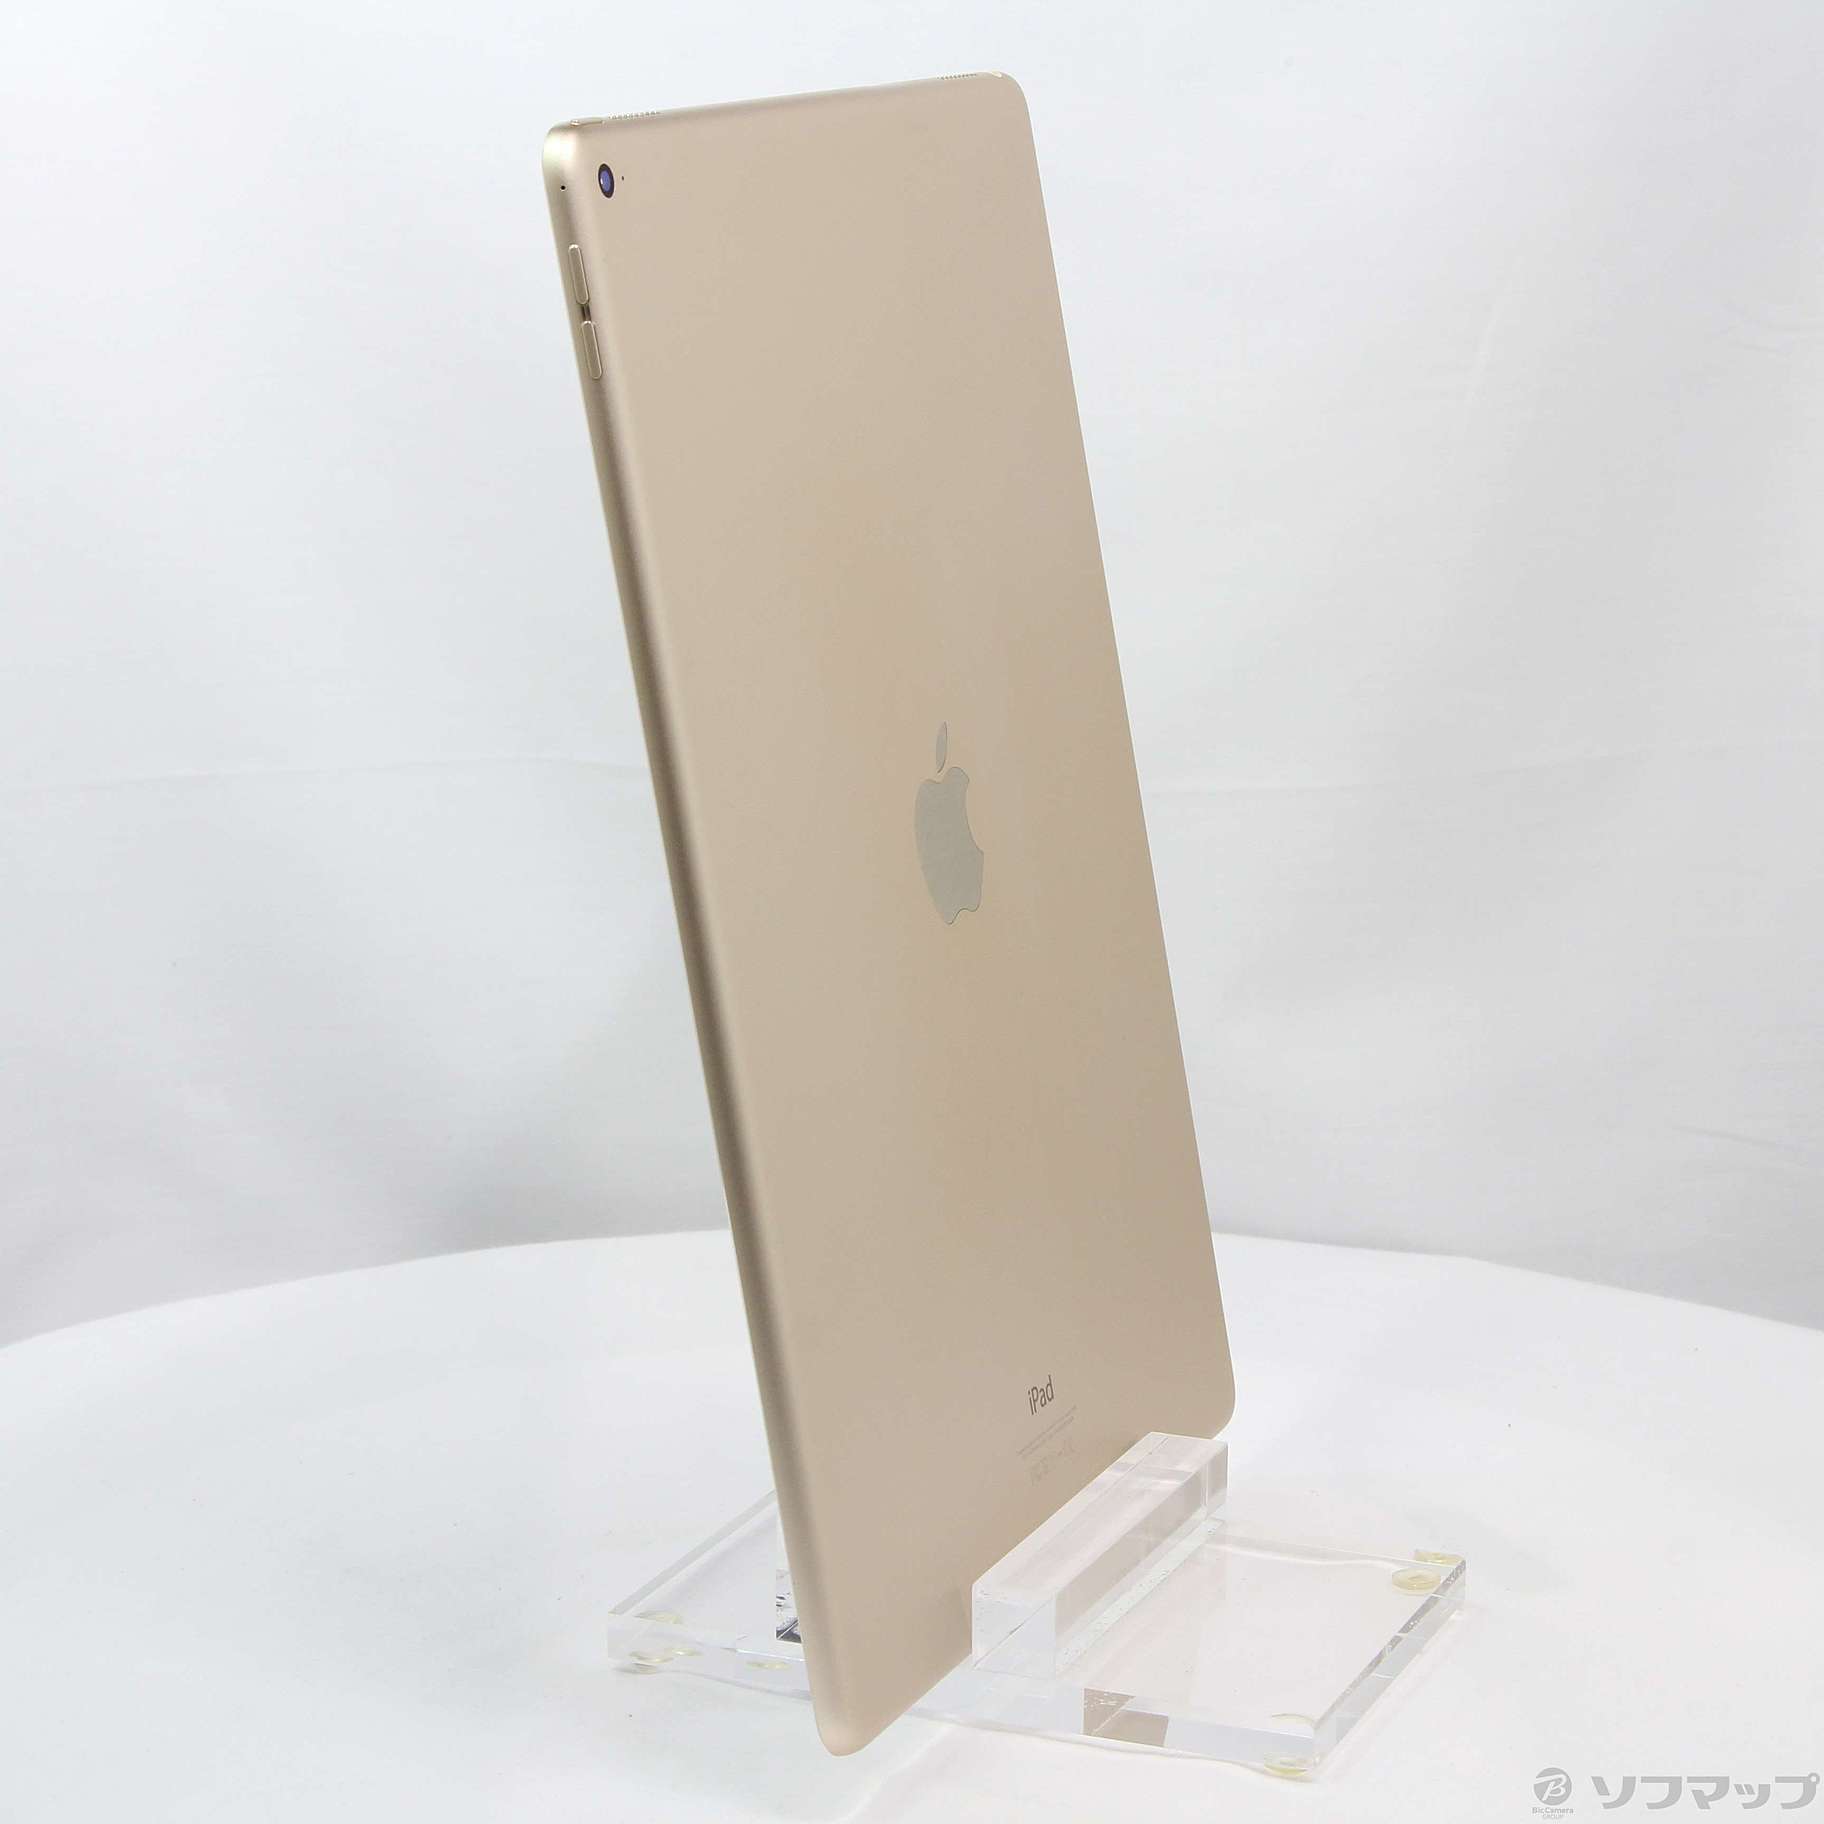 iPad pro 12.9インチ 128GB ゴールド